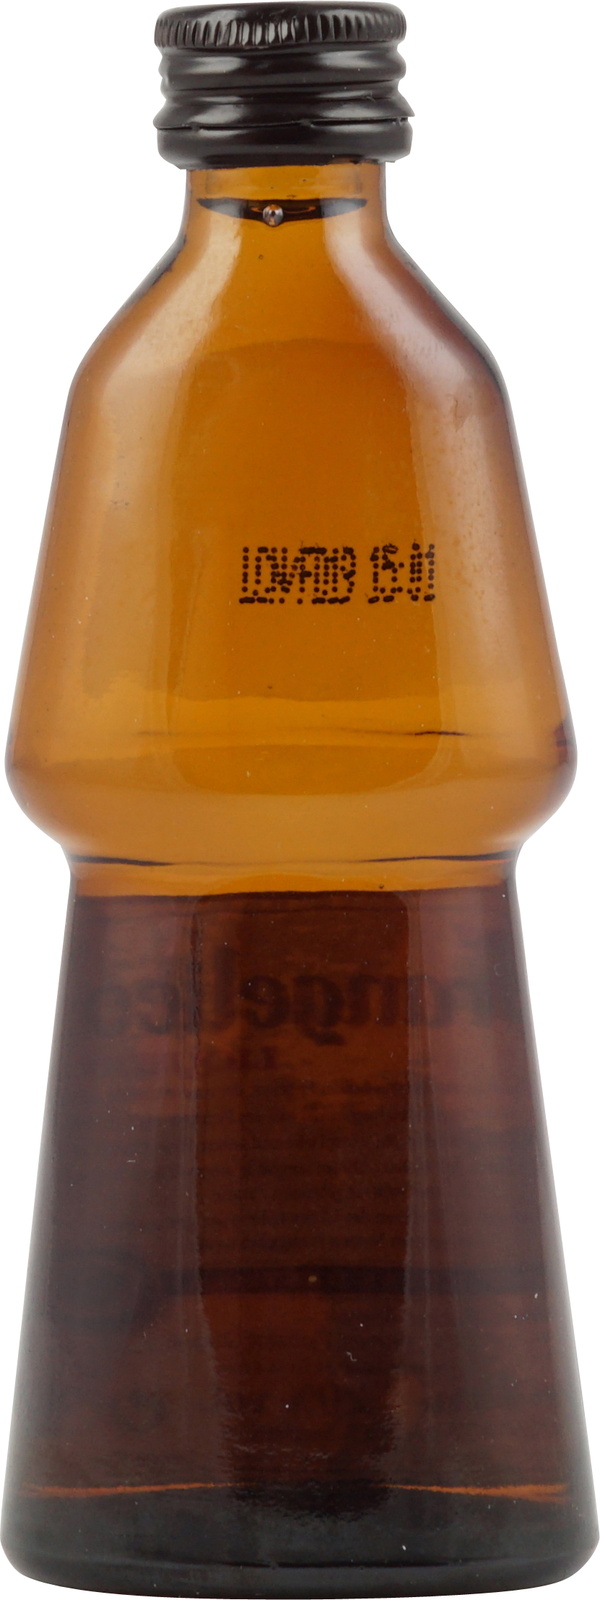 Frangelico Haselnusslikör in der Miniaturflasche mit 50